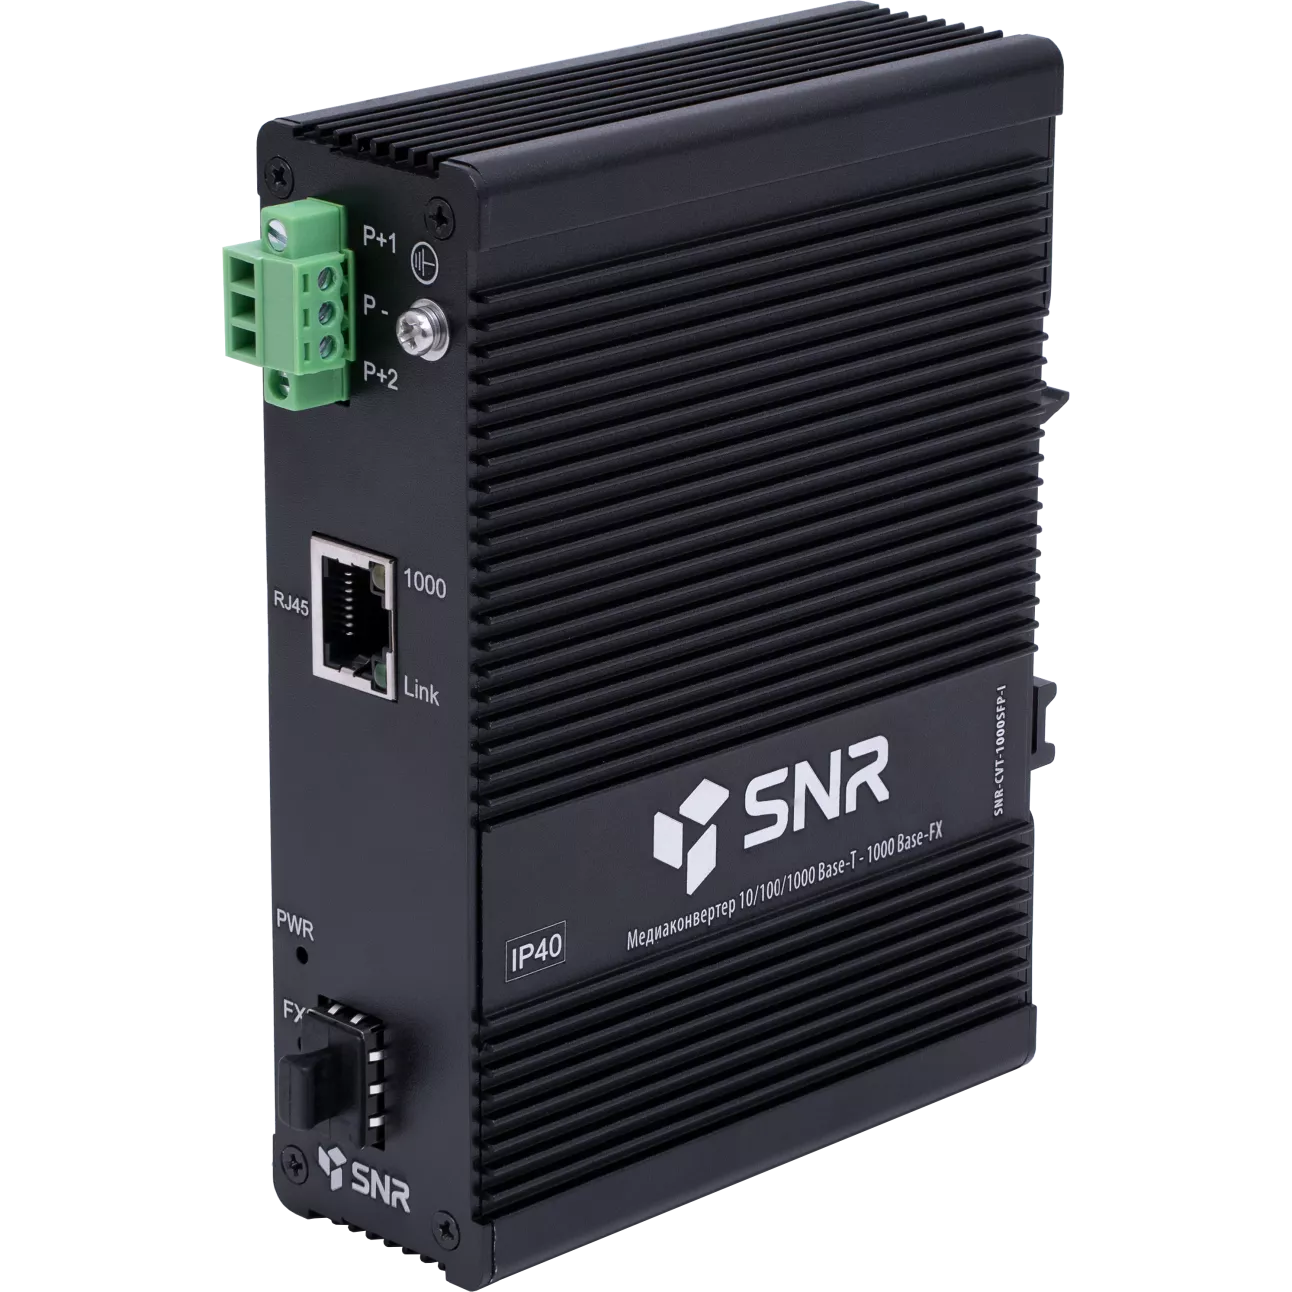 МедиаконвертерSNR-CVT-1000SFP-I преобразует сигнал из стандарта 10/100/1000-Base-T на сигнал1000Base-FX, оснащен слотом SFP для оптических трансиверов, выбираемых пользователем, и расширяет сетевое соединение для различных расстояний в зависимости от возможностей SFP трансивера